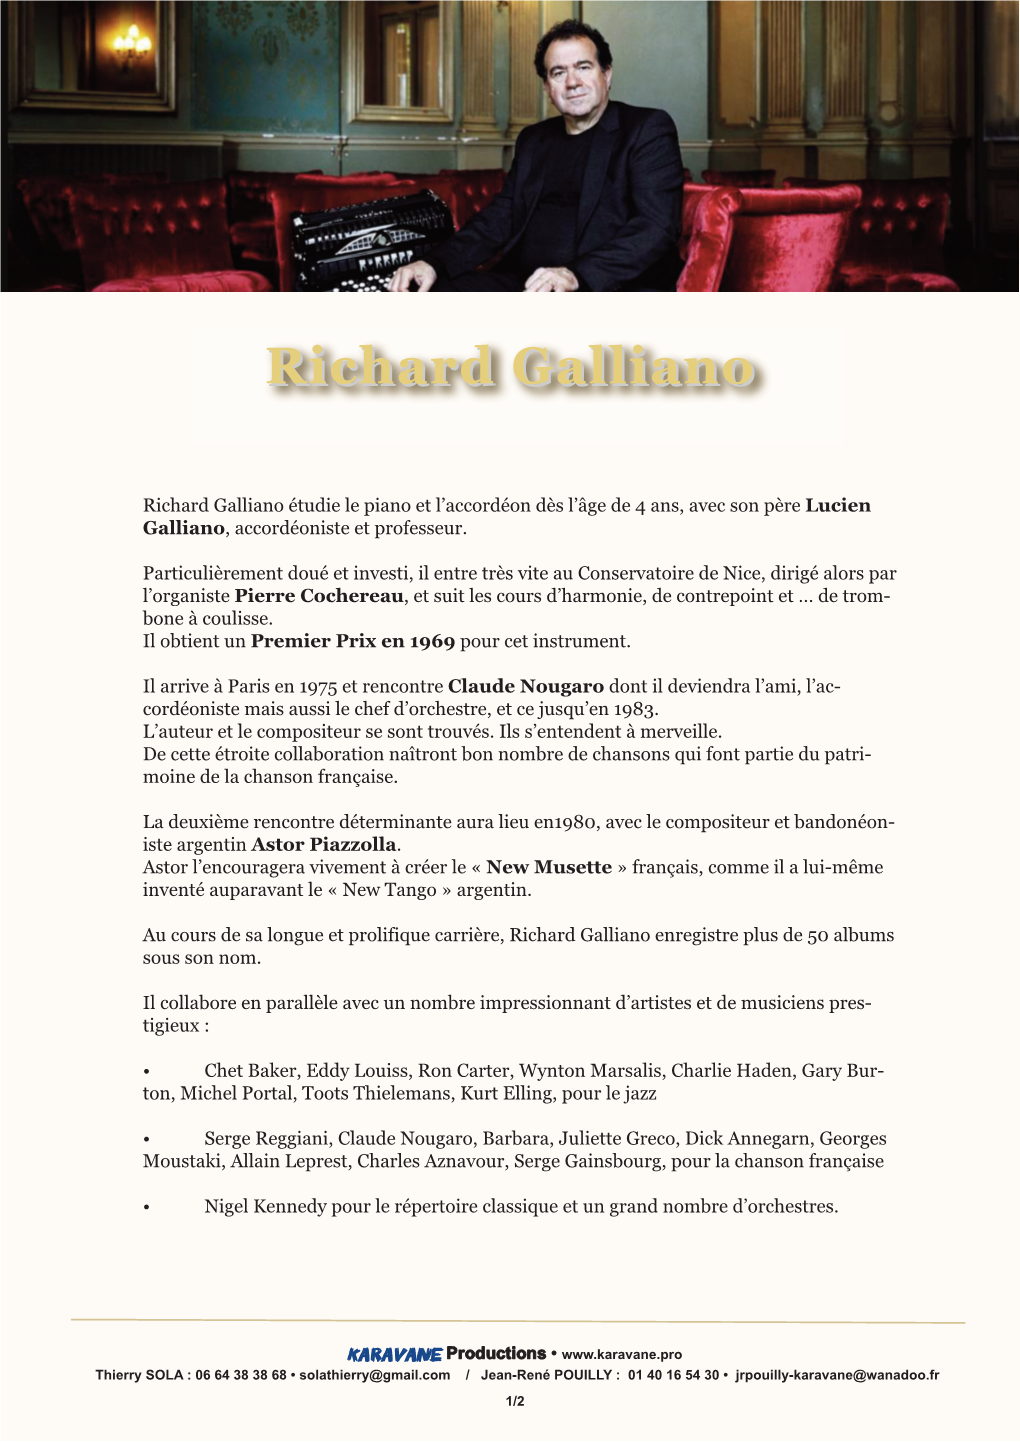 Richard Galliano Étudie Le Piano Et L’Accordéon Dès L’Âge De 4 Ans, Avec Son Père Lucien Galliano , Accordéoniste Et Professeur